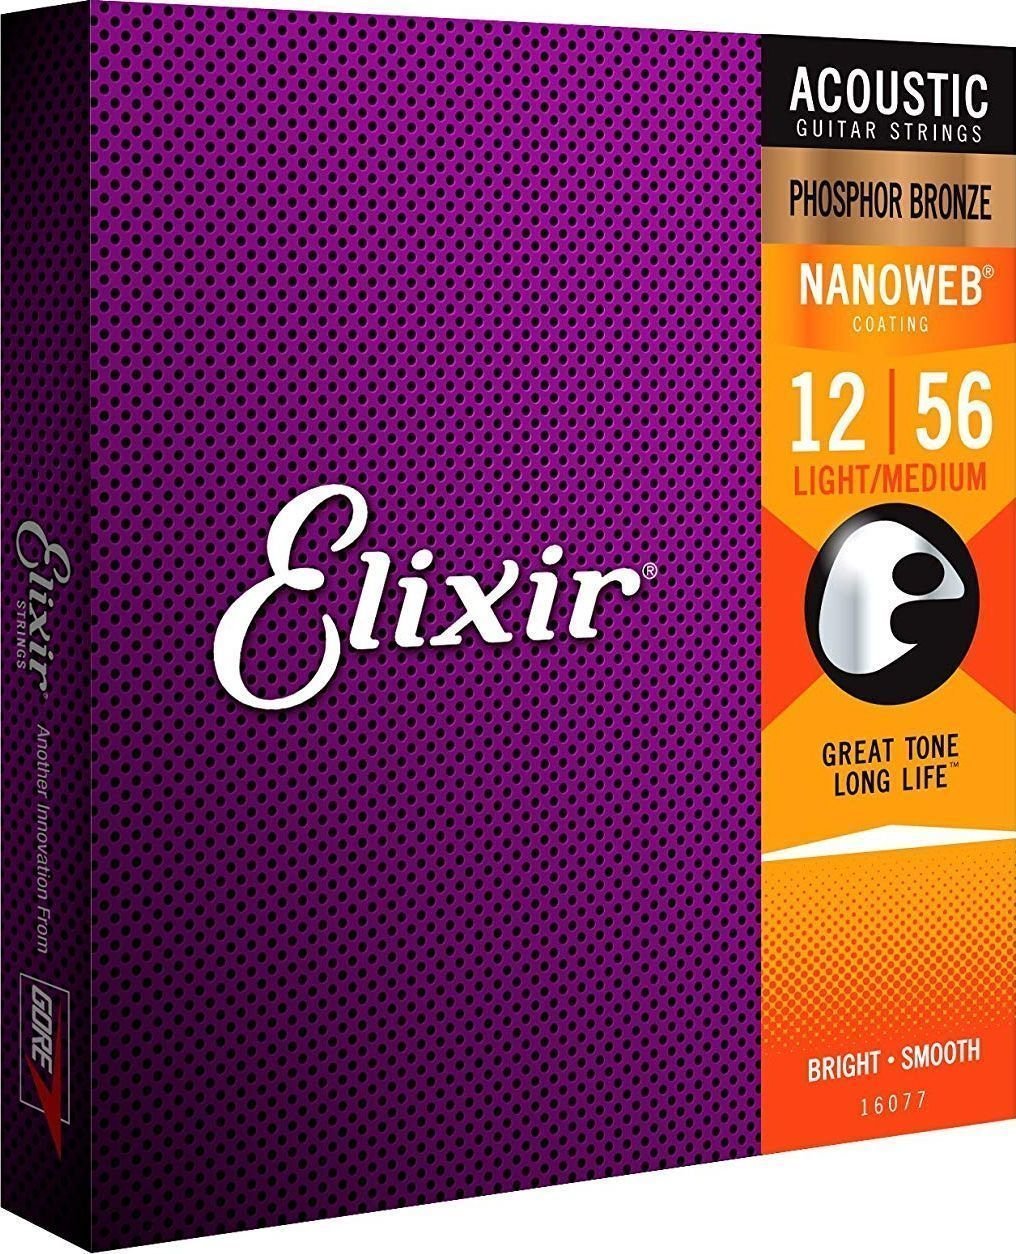 Struny pre akustickú gitaru Elixir 16077 Nanoweb 12-56